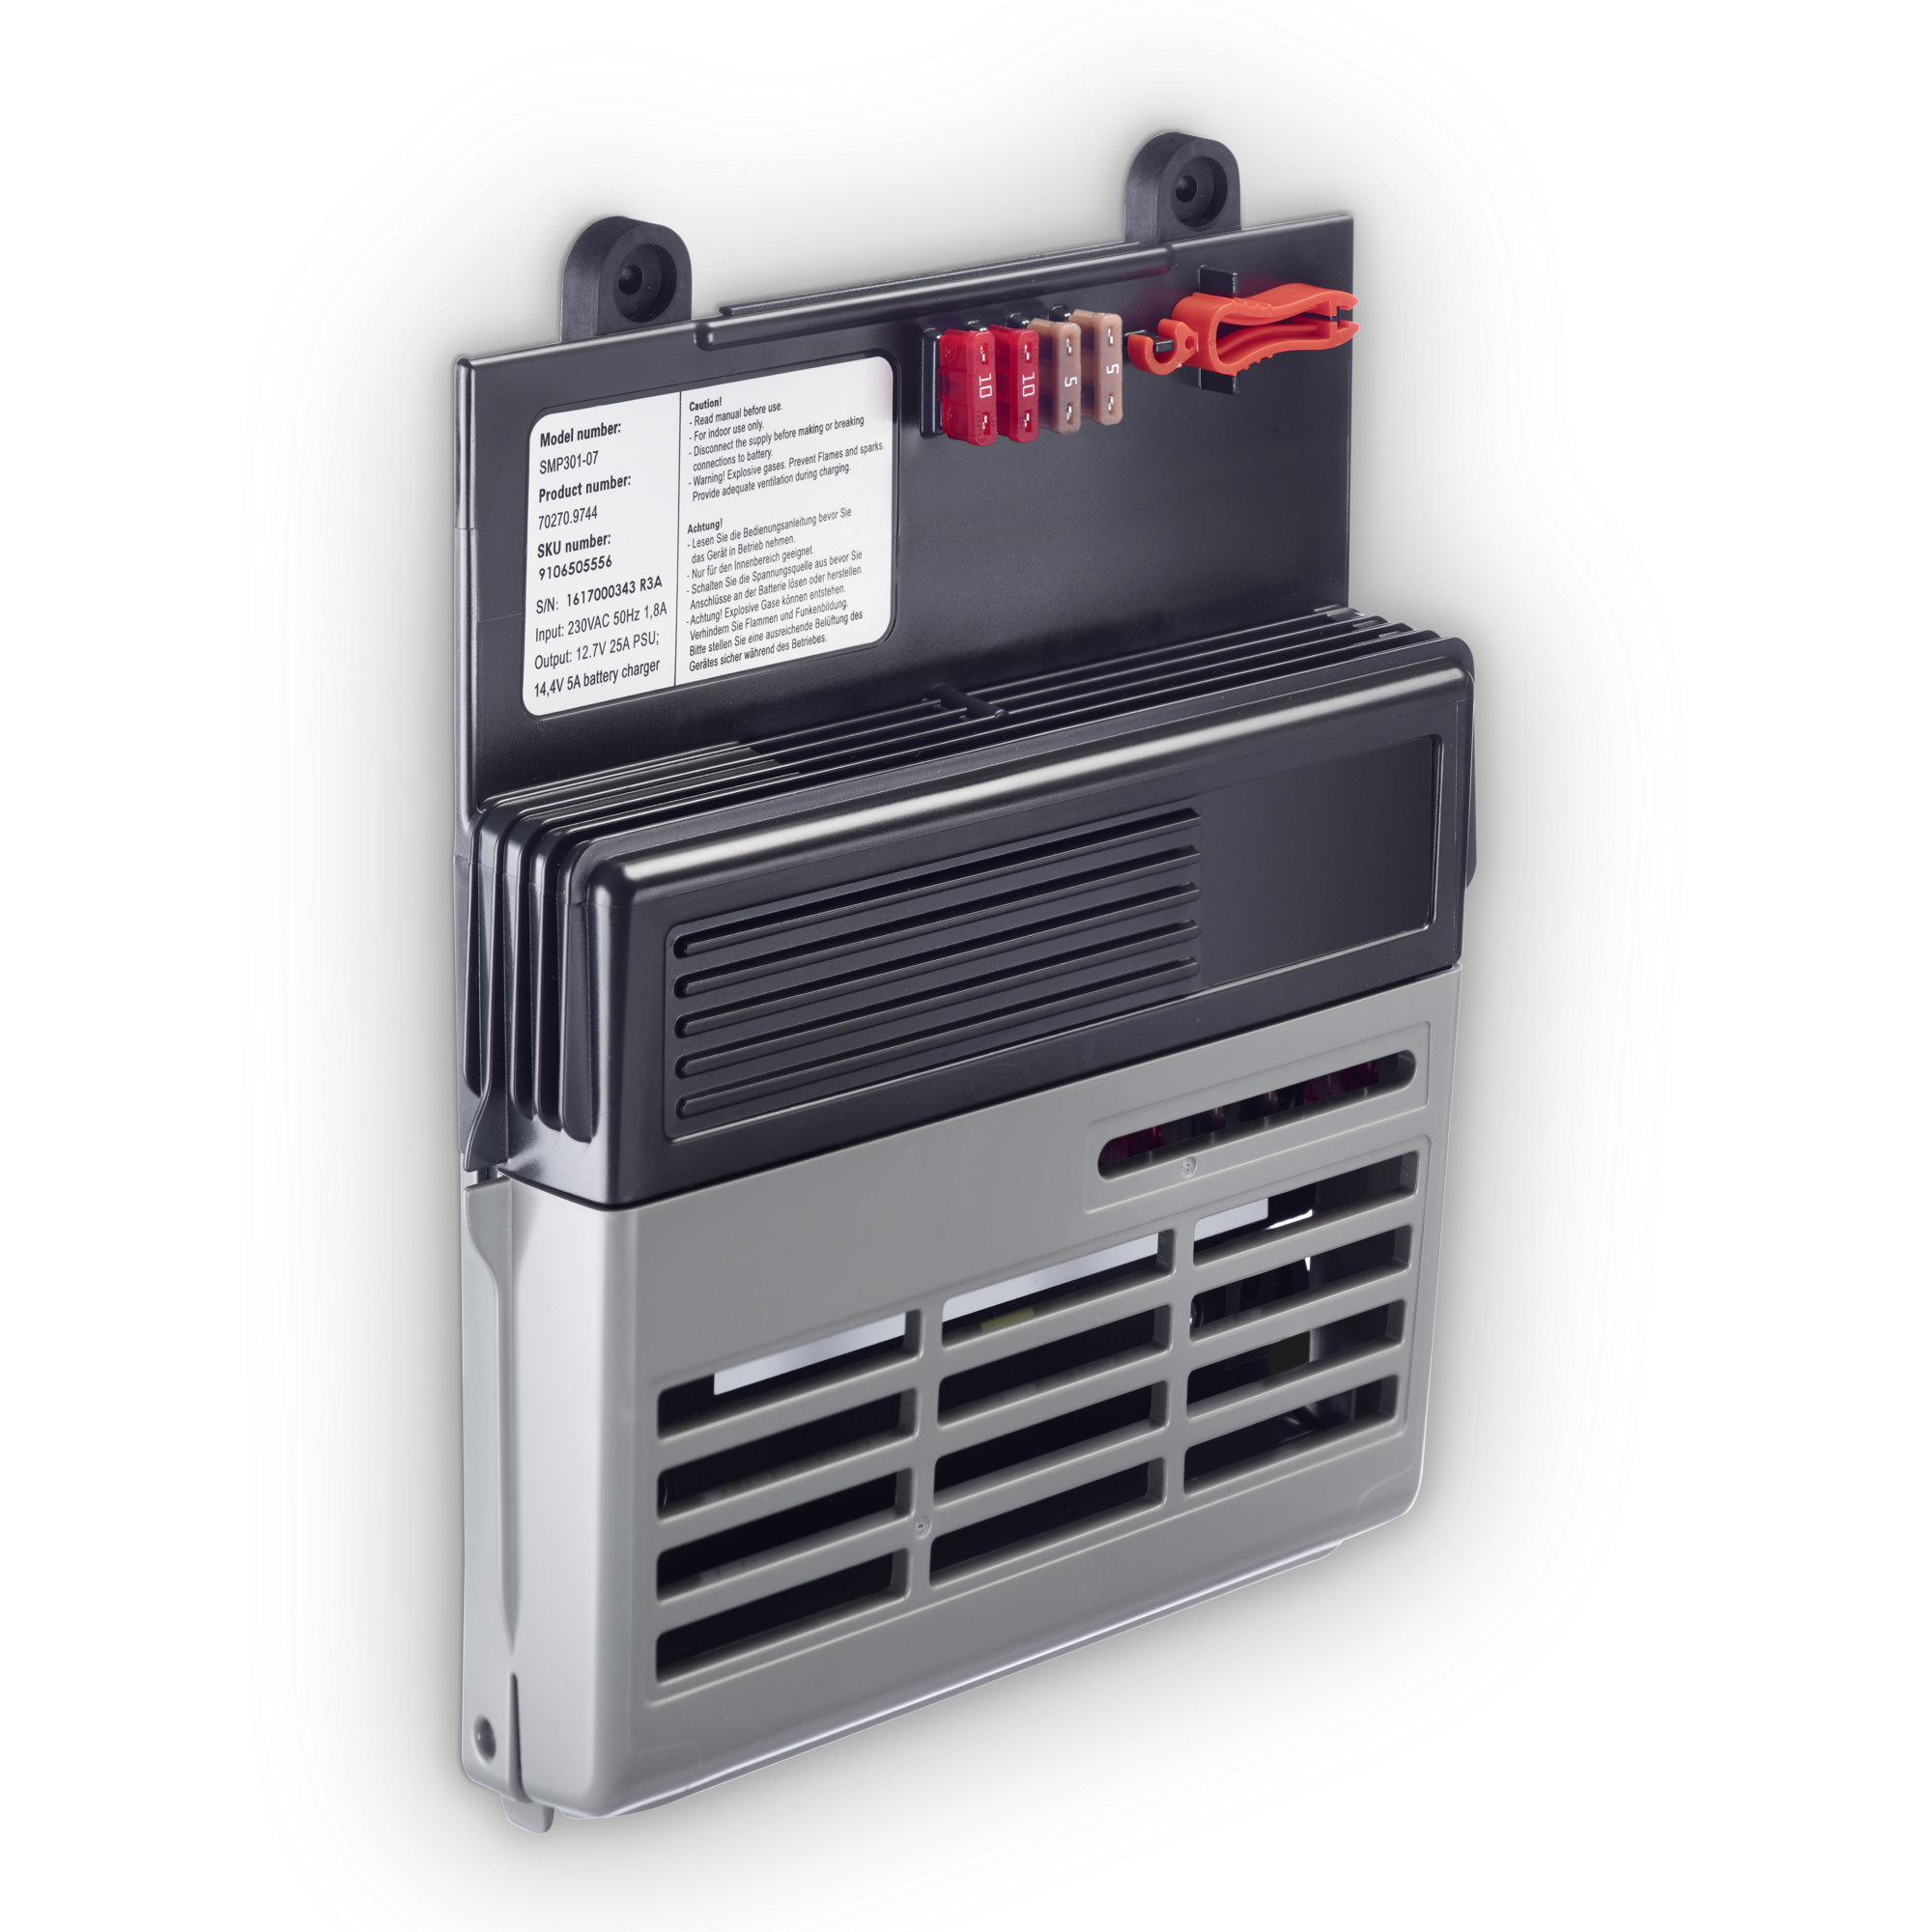 Dometic SMP 301-07 Kombi-Batterieladegerät und Stromnetzteil, 12 Volt